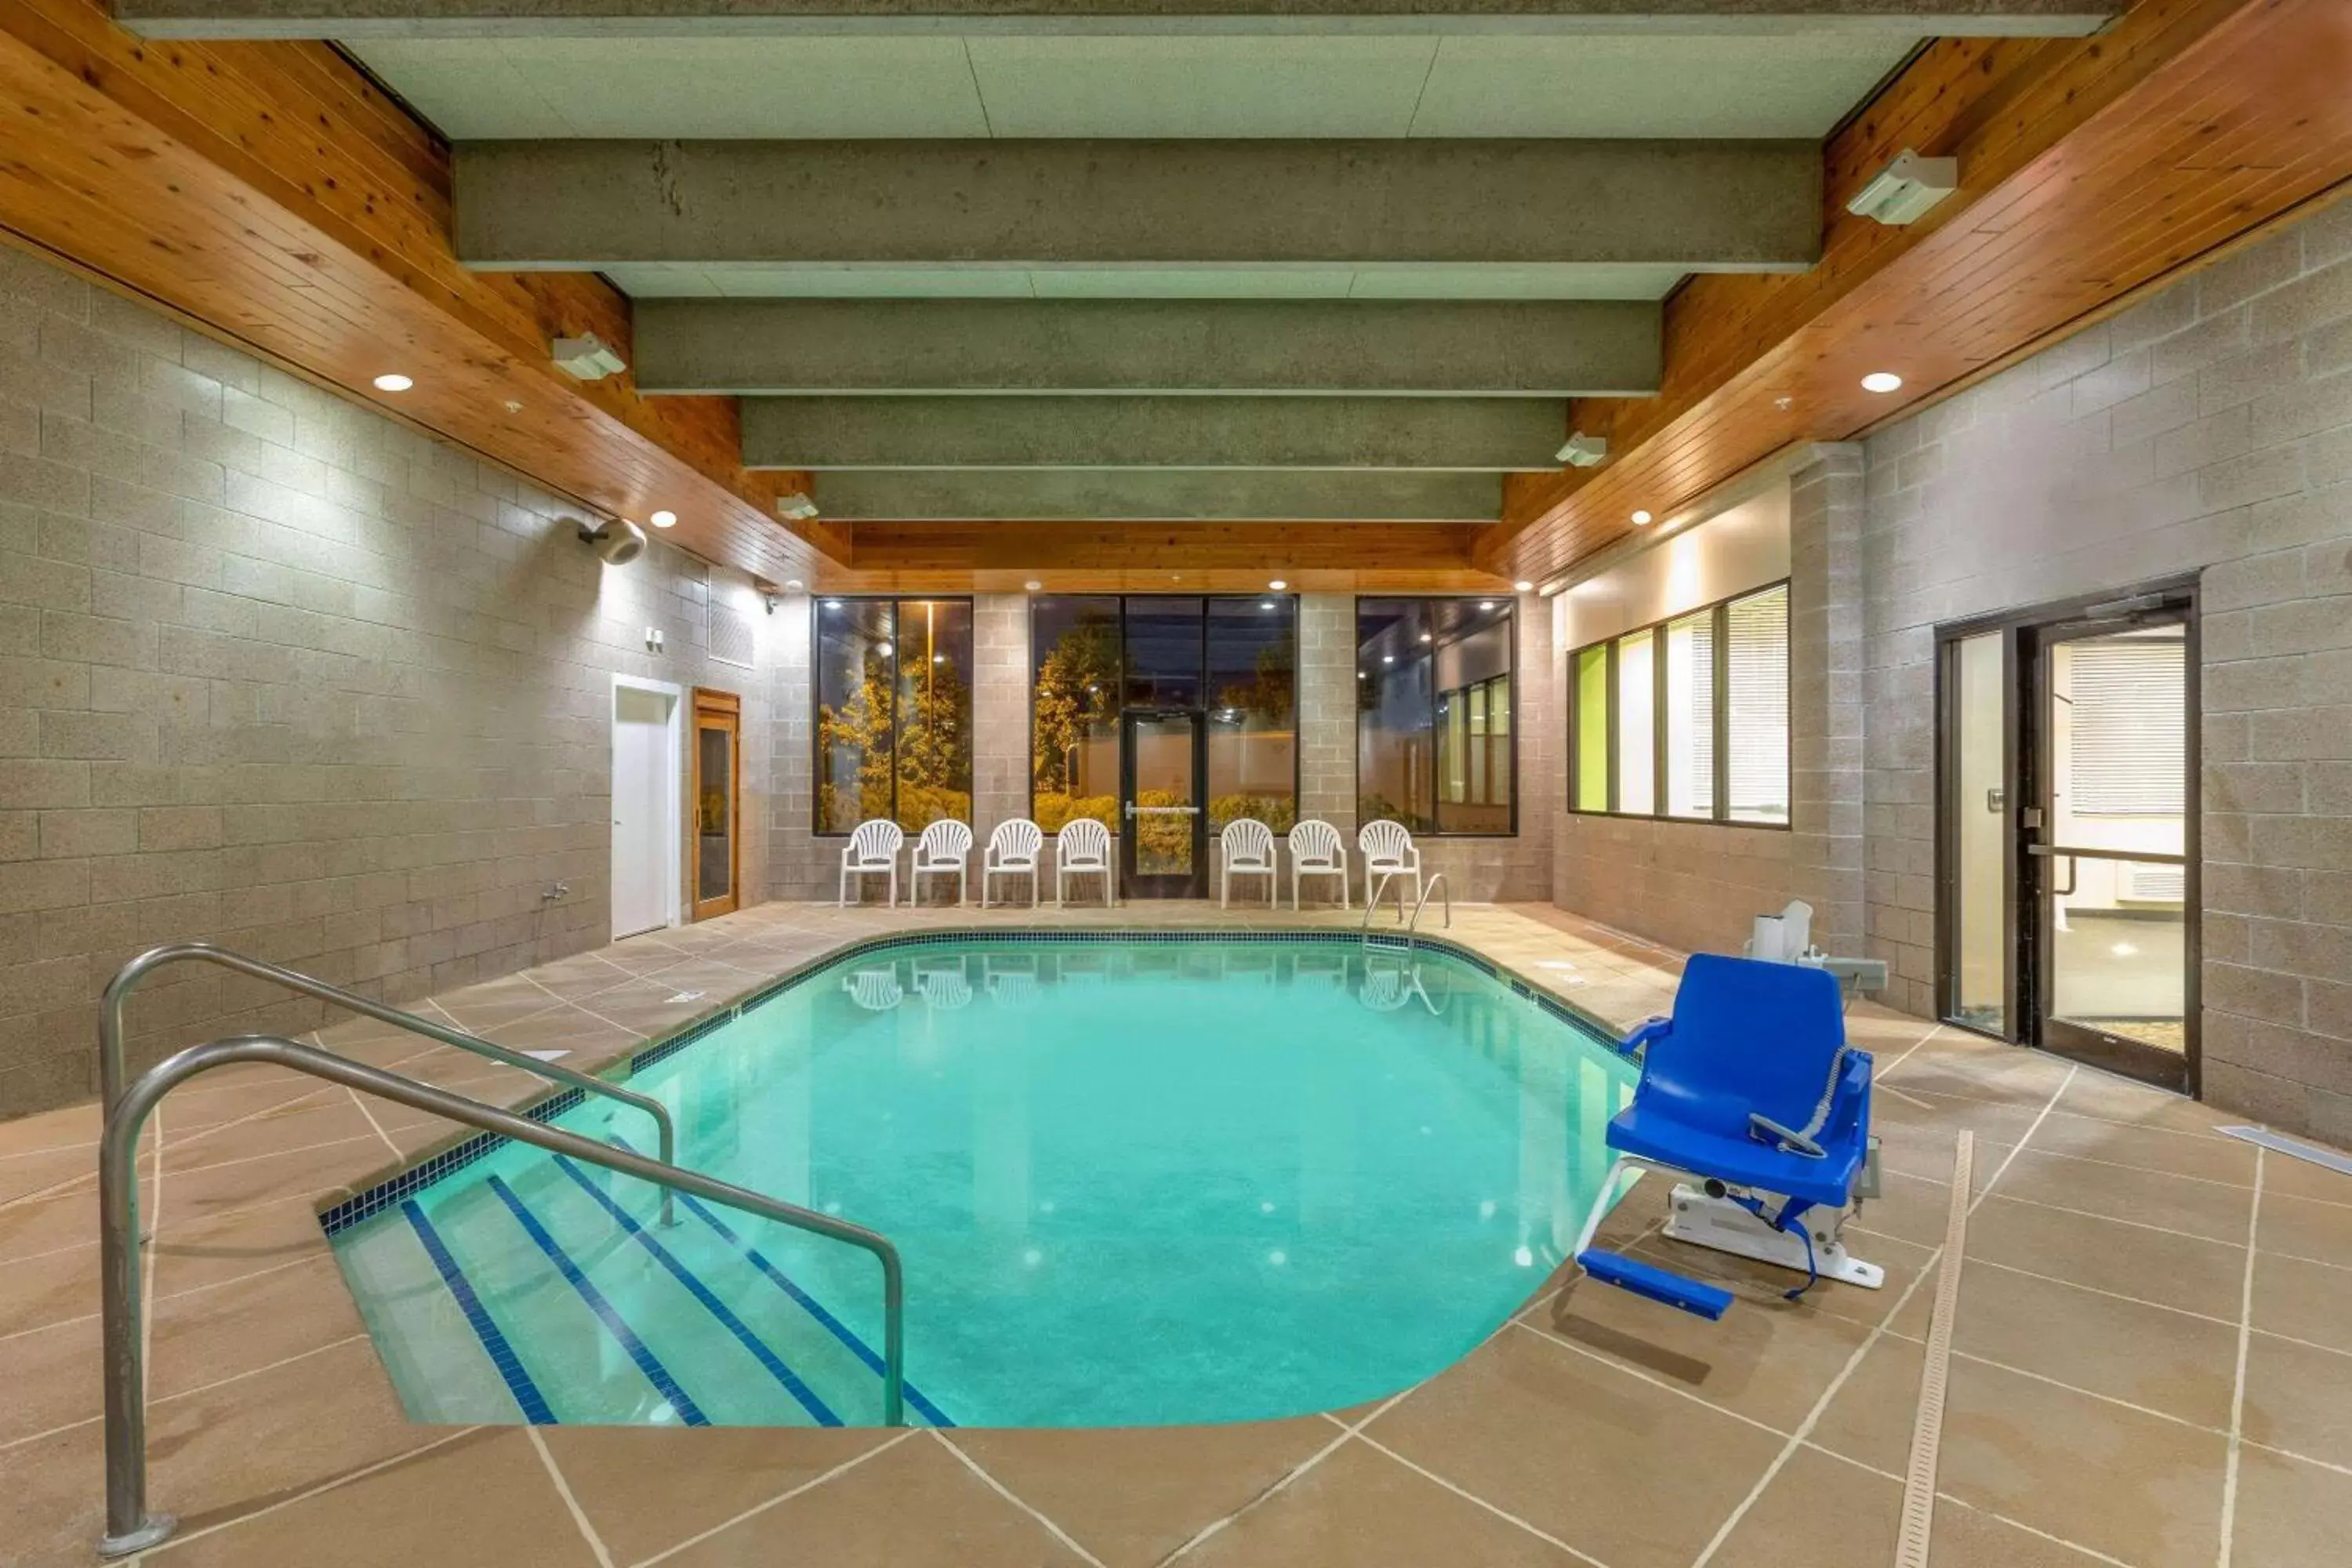 On site, Swimming Pool in Days Inn by Wyndham Eagan Minnesota Near Mall of America